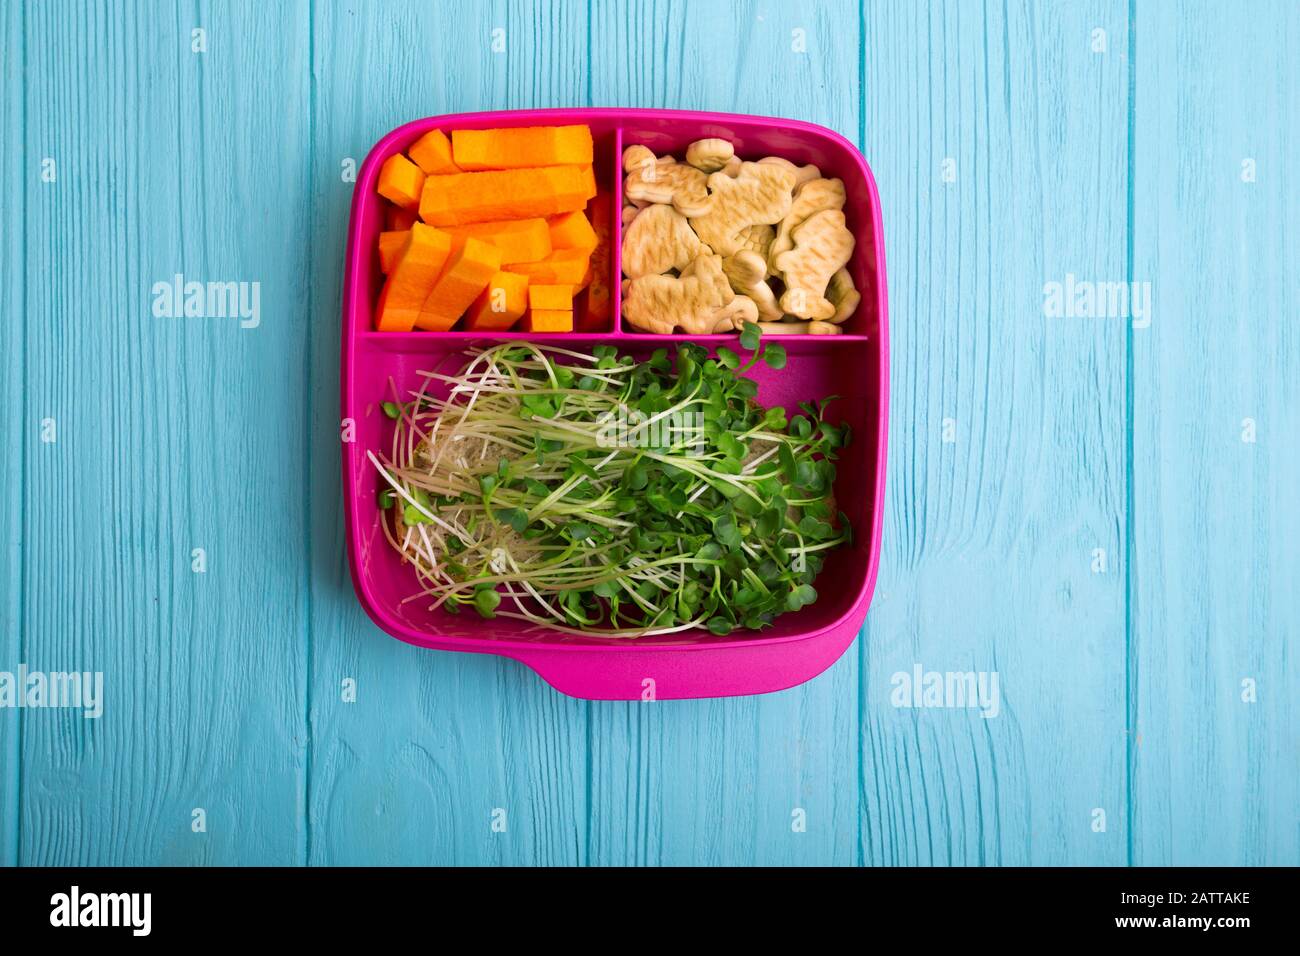 Gesunde Snacks für Schüler und Studierende. Studie und das gesunde Essen.  Lunch Box mit gesunden Lebensmitteln - Karotten, Nüsse, Sprossen  Stockfotografie - Alamy